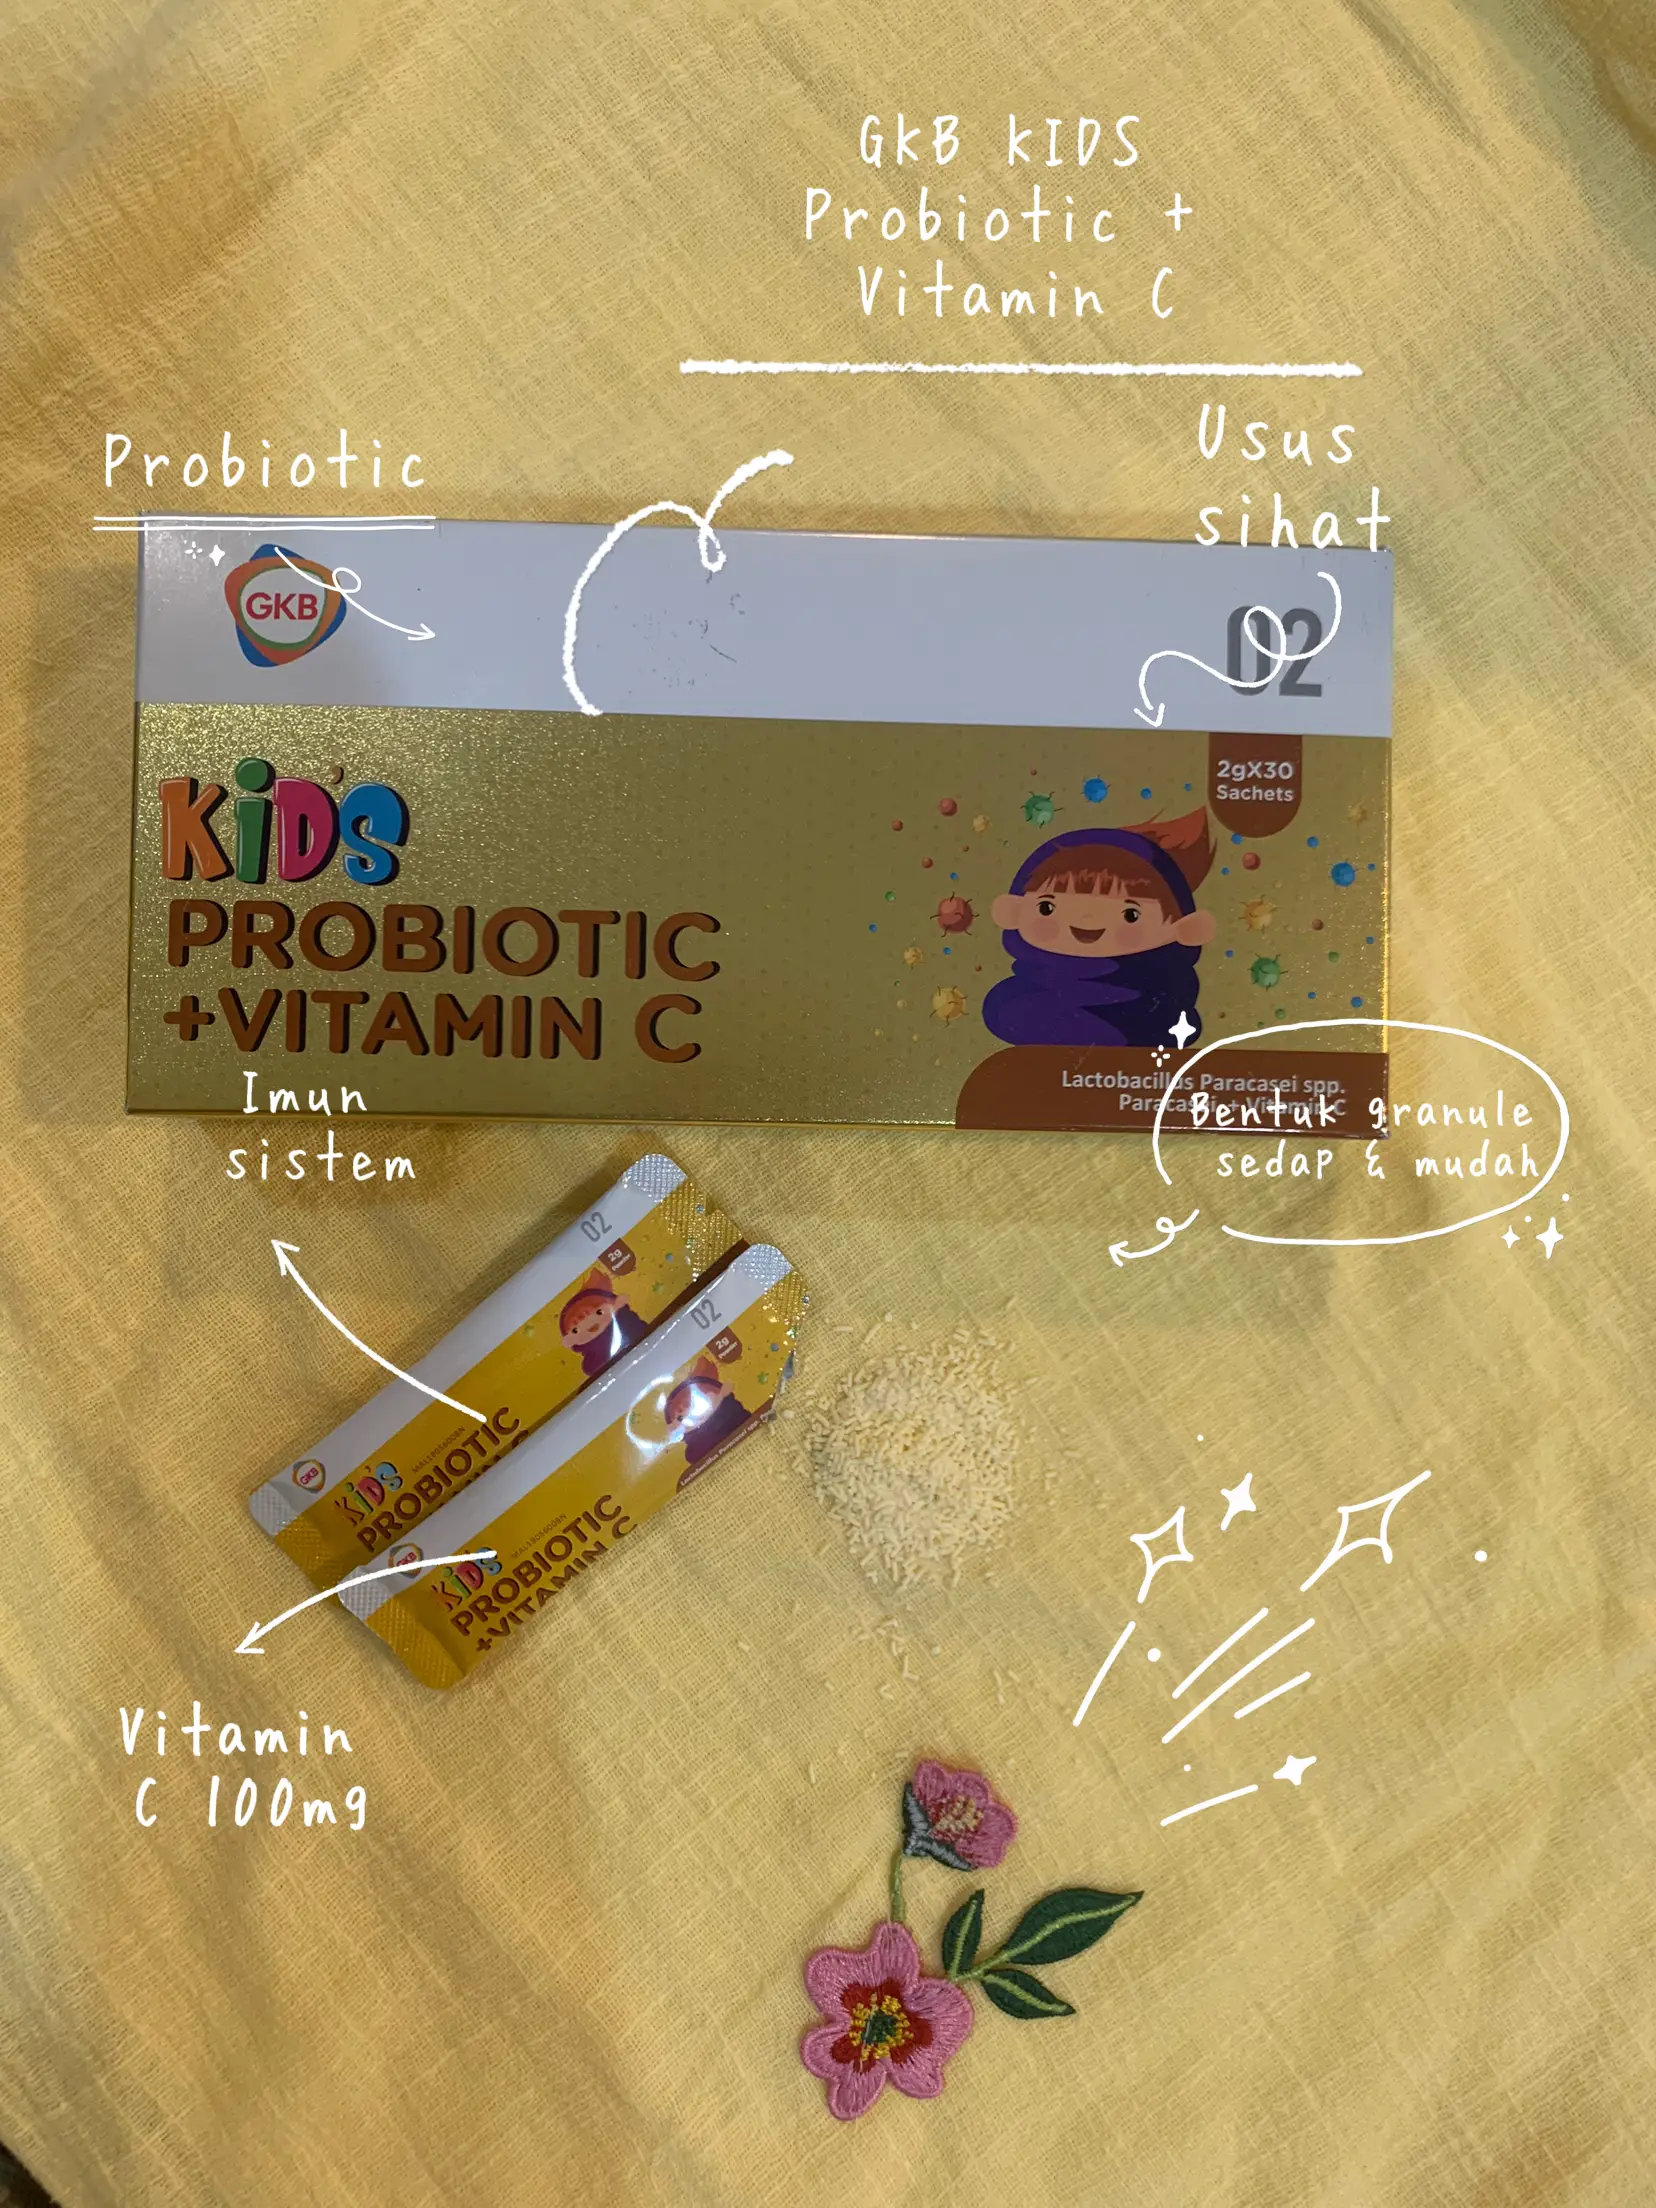 Keistimewaan GKB KIDS Probiotic + Vitamin C | Gallery posted by